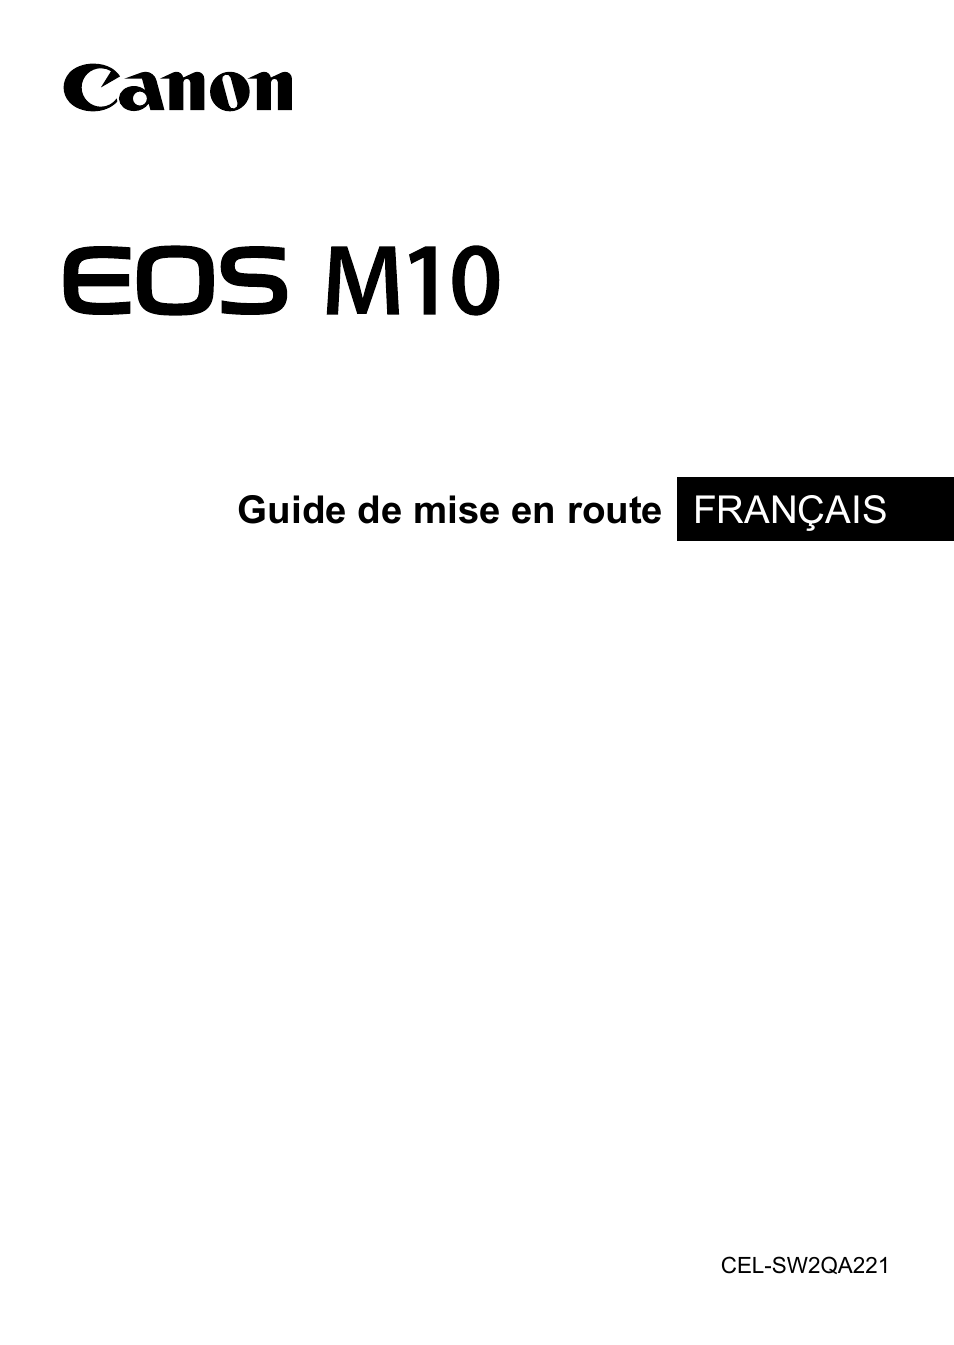 Canon EOS M10 Manuel d'utilisation | Pages: 21